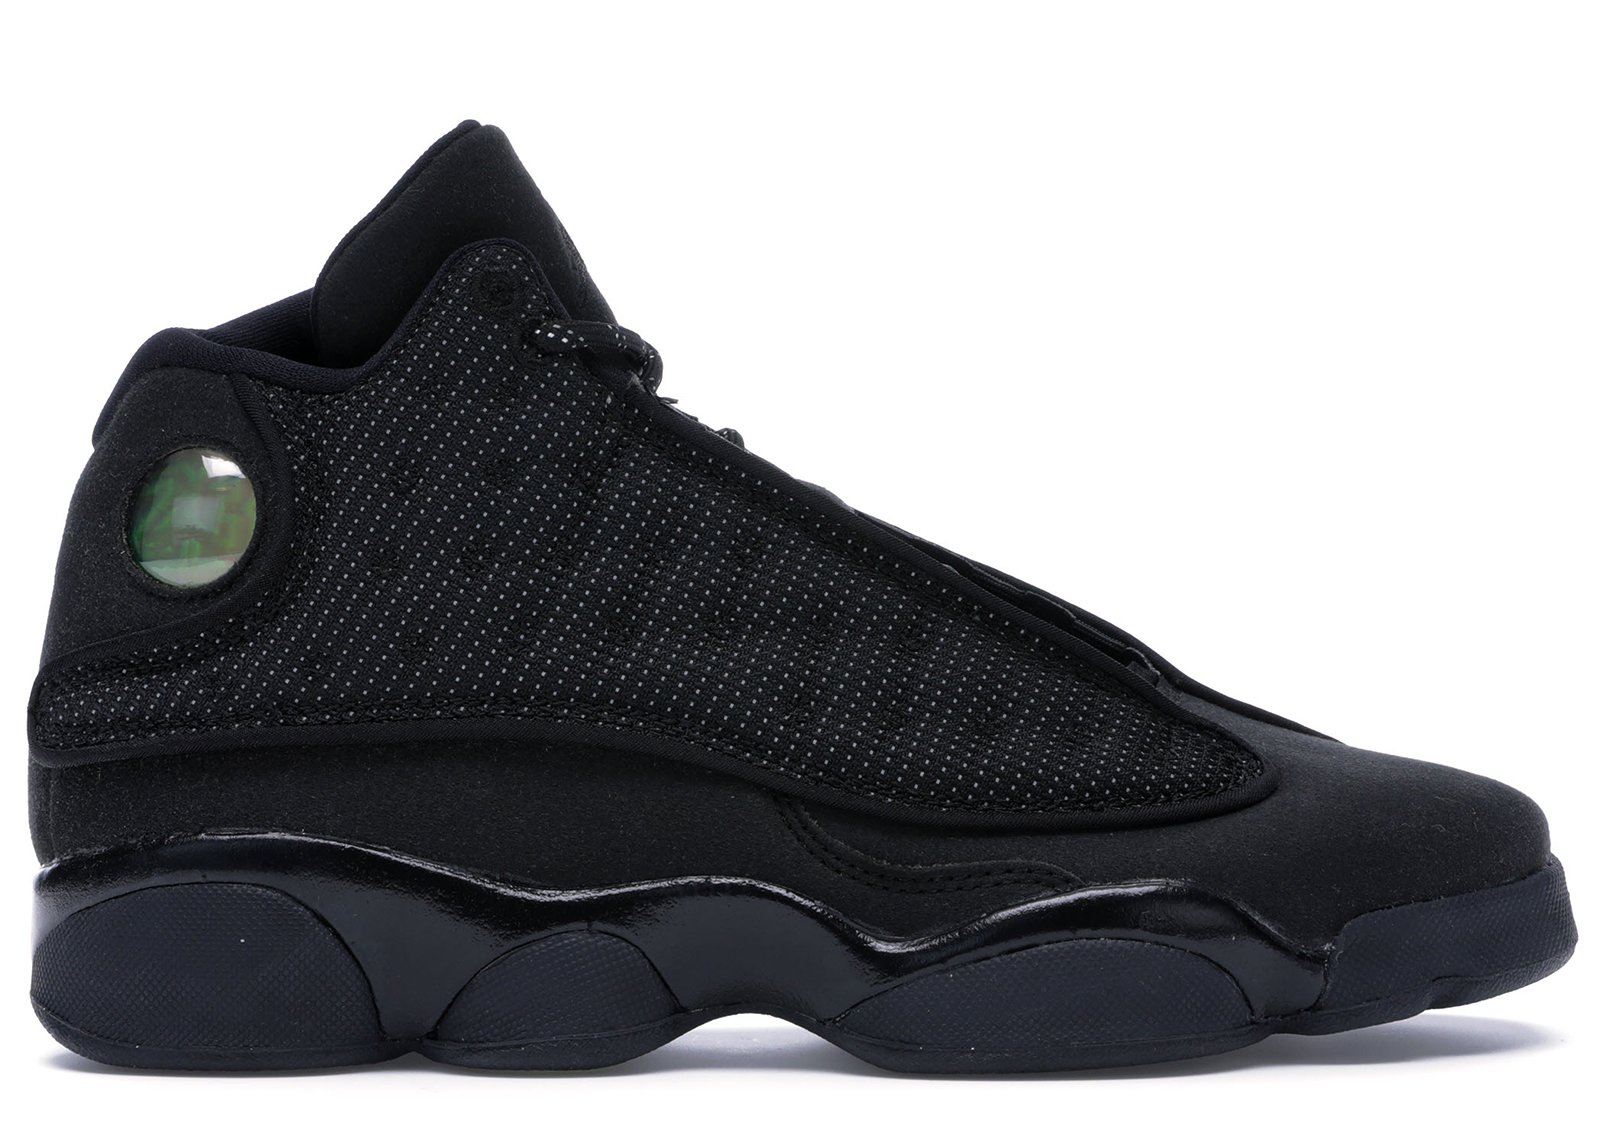 Jordan 13 Retro Black Cat (GS) sneakers